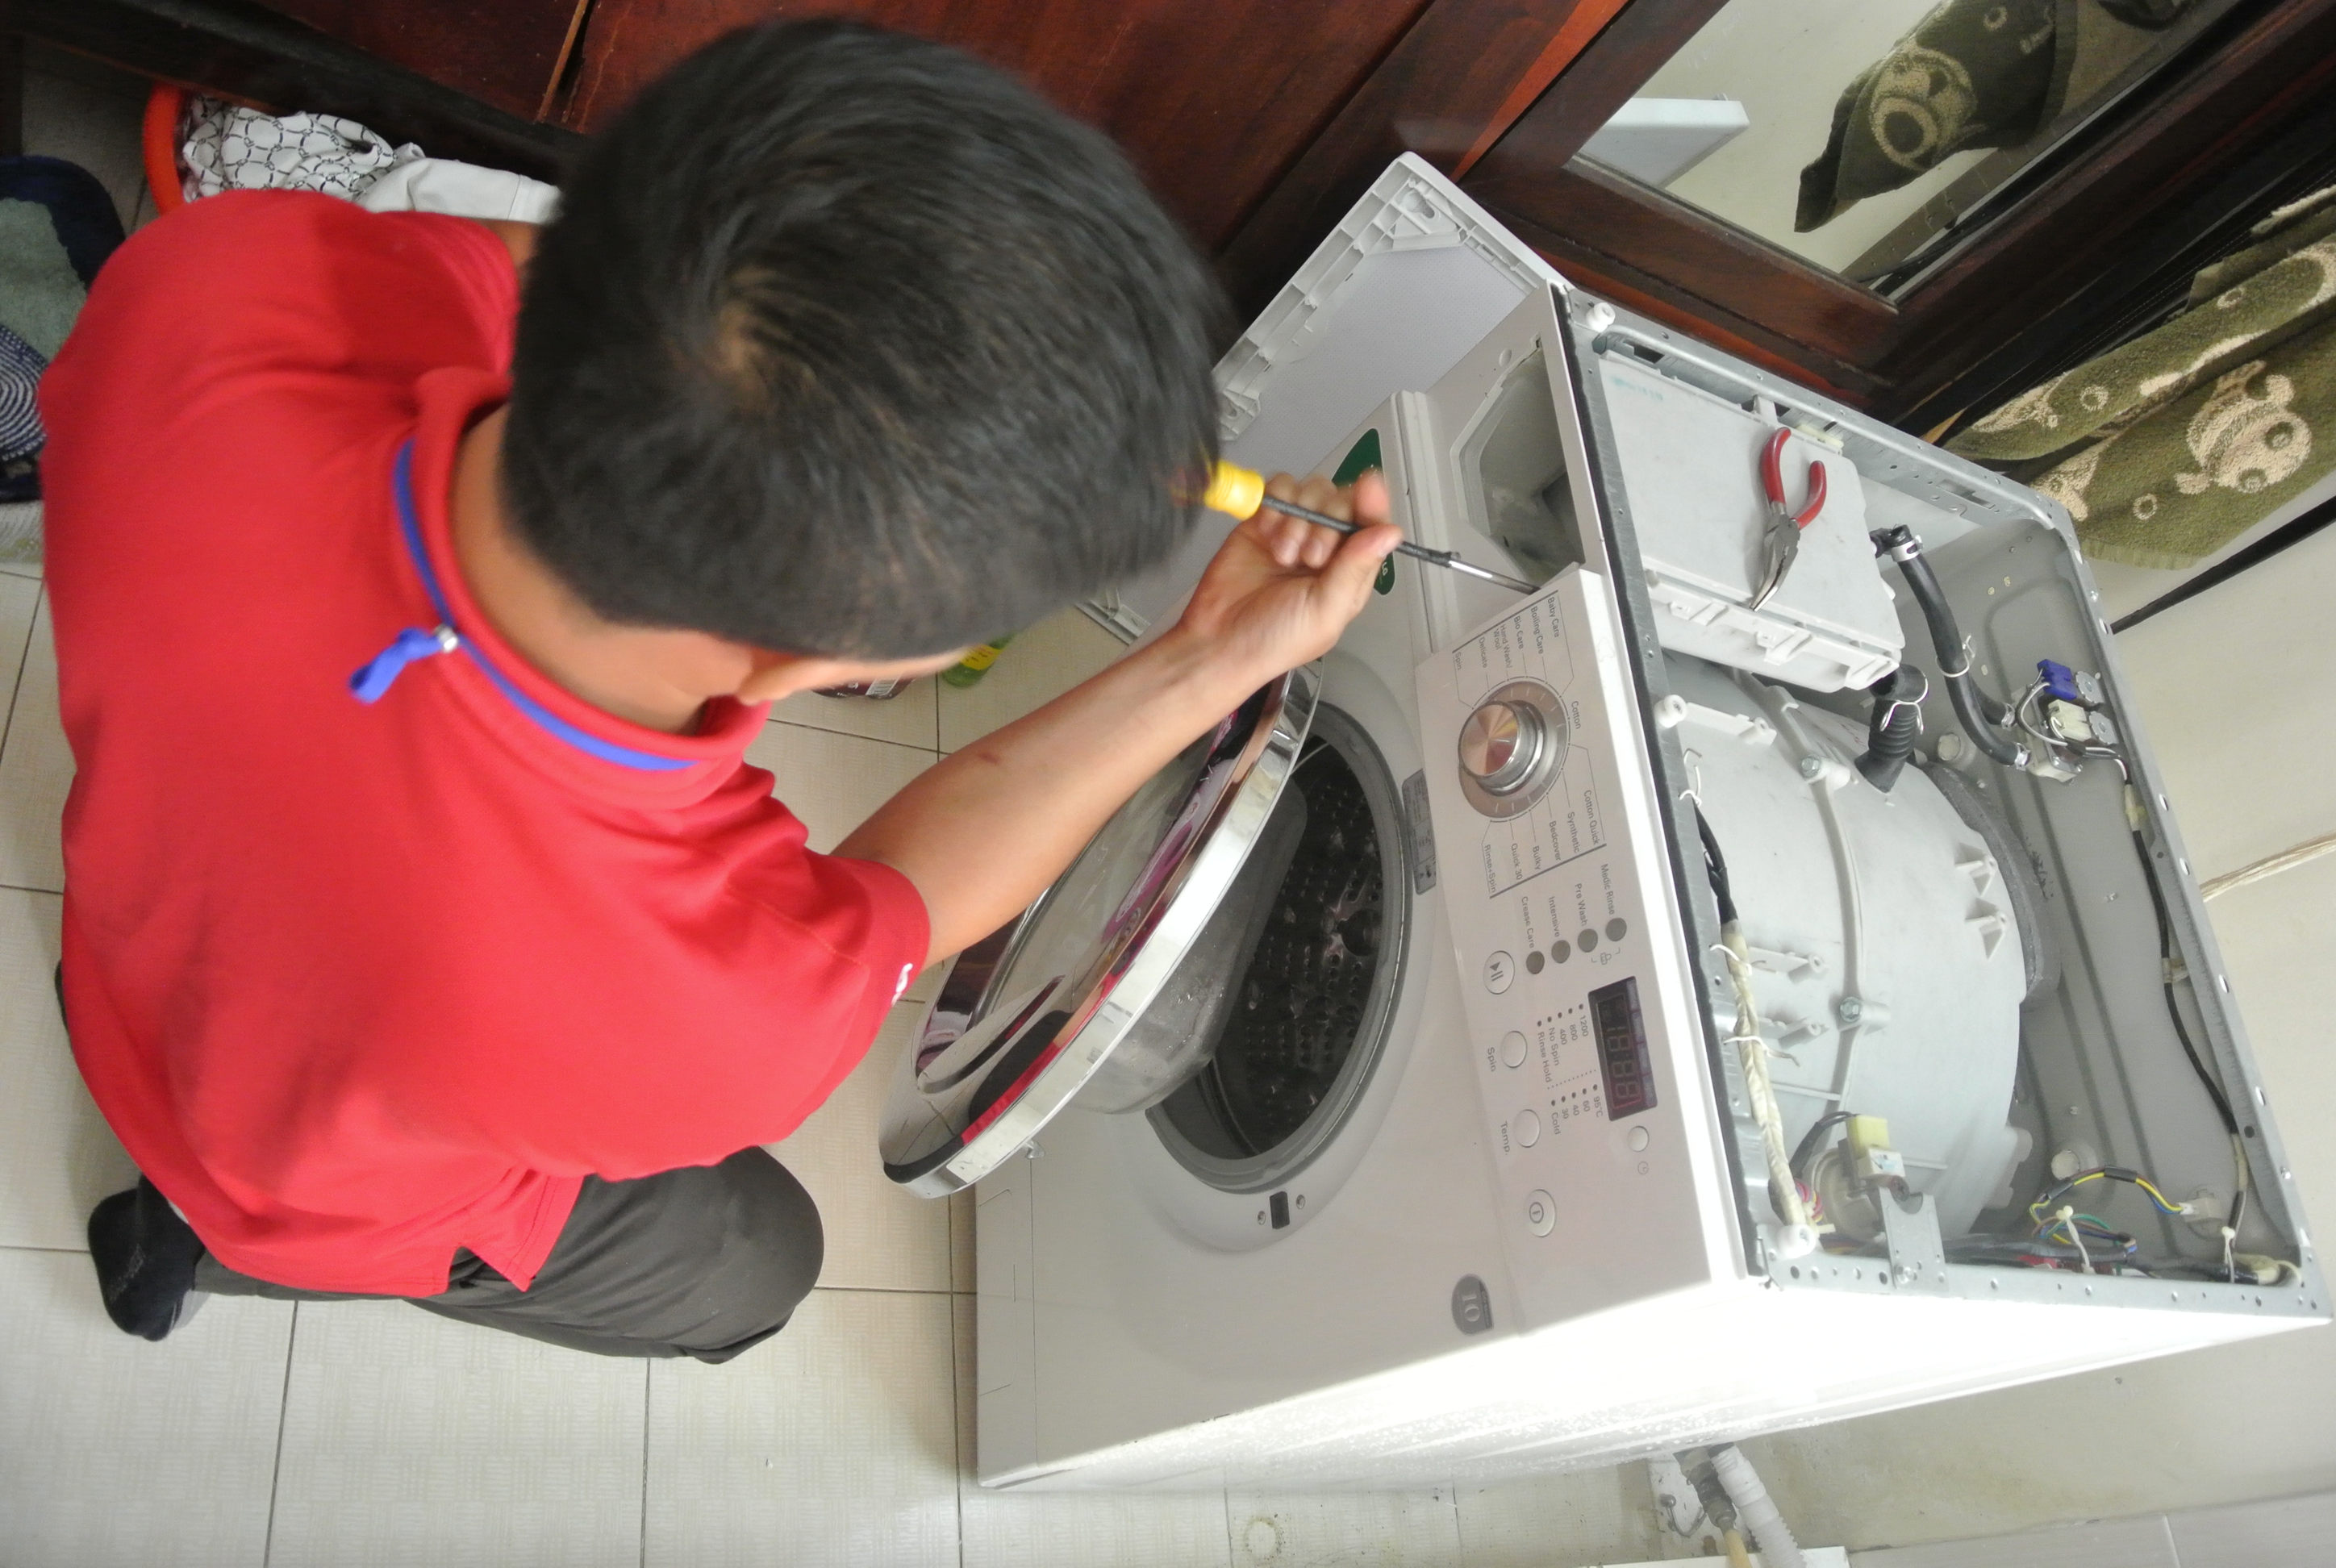 Hướng dẫn sử dụng máy giặt sanyo đơn giản